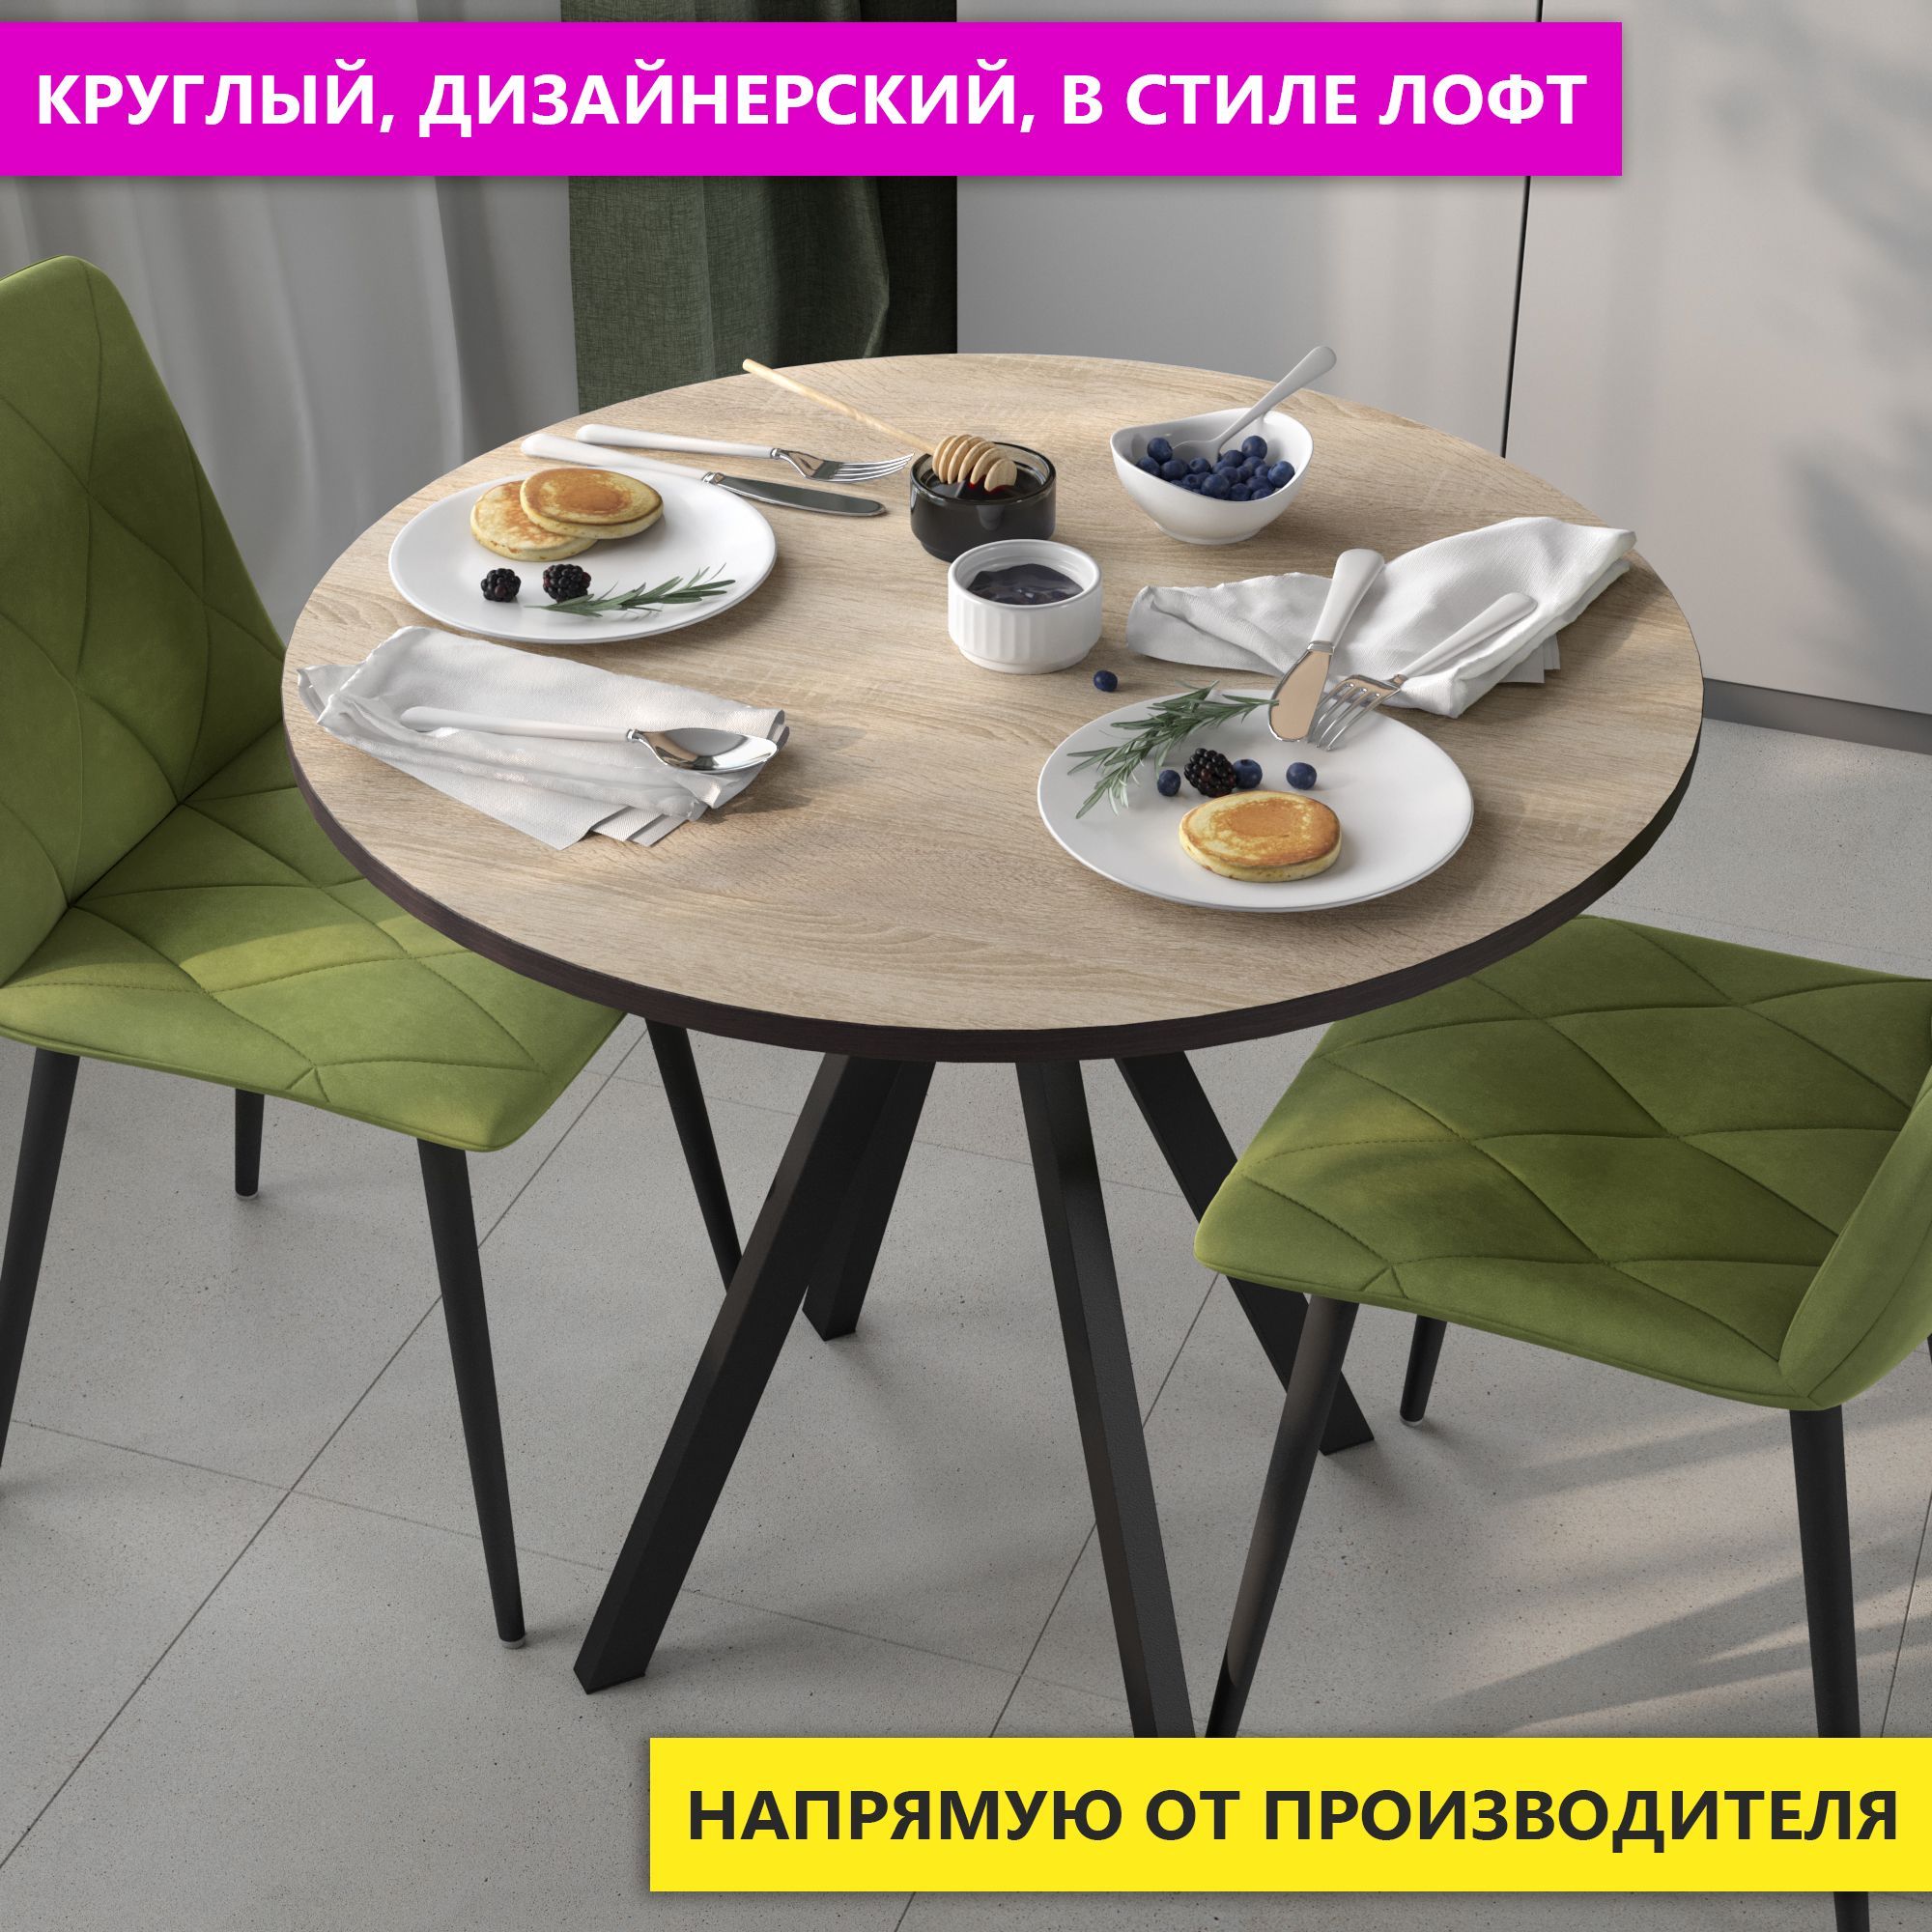 Стол круглый для кухни обеденный DecoLine Вита К, дуб сонома, d 90 см - купить в Москве, цены на Мегамаркет | 600014652896